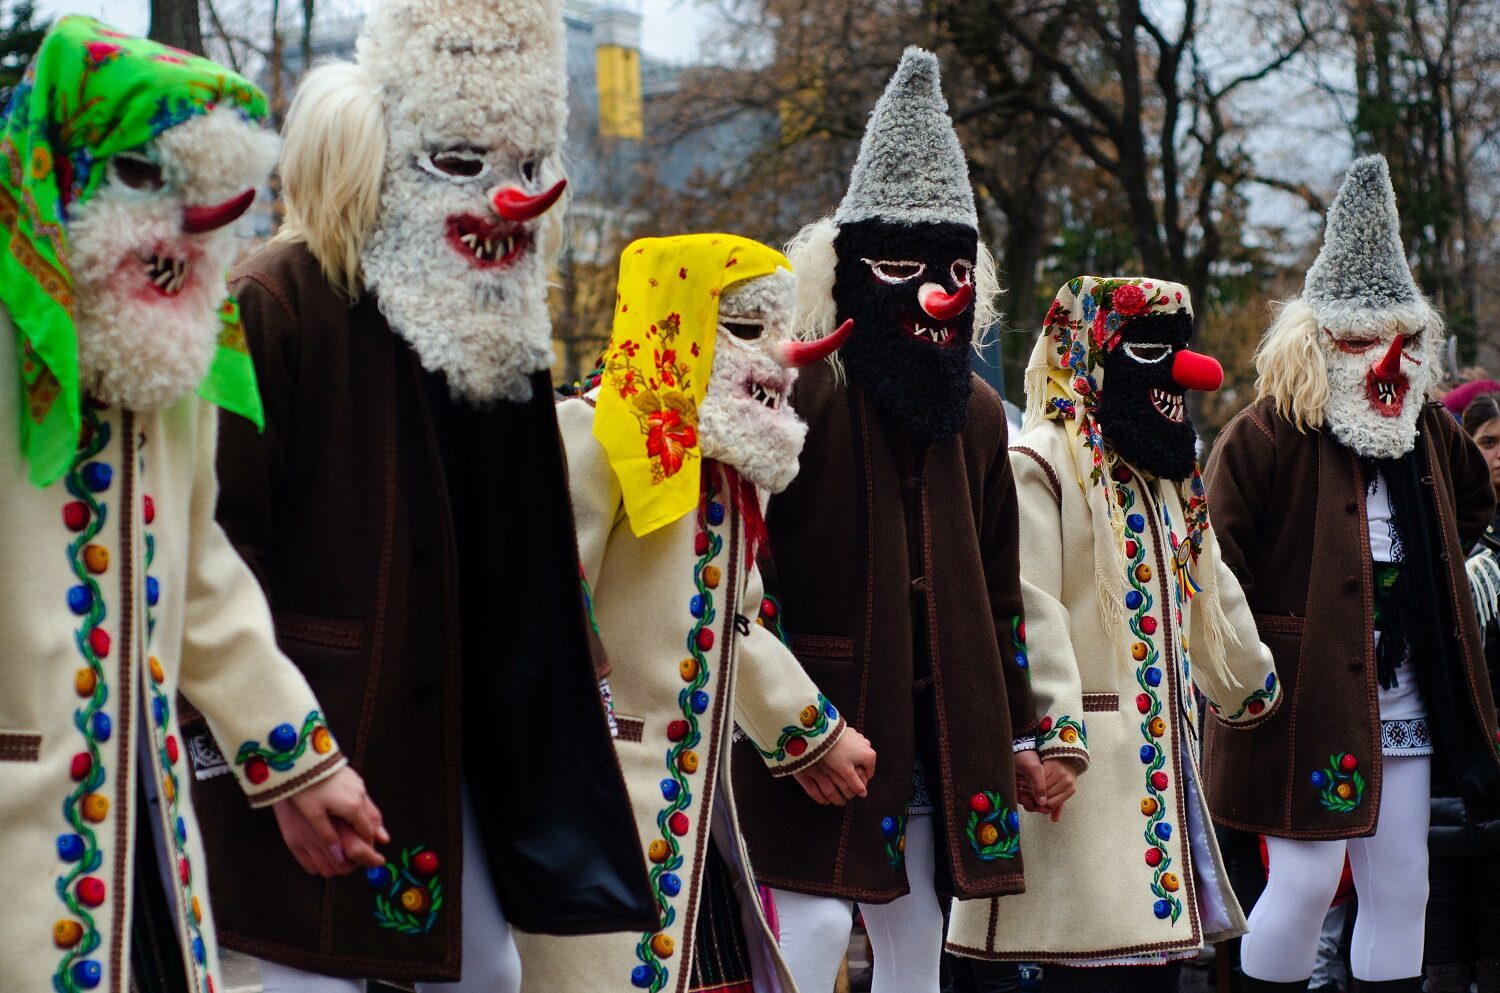 barbati si femei in costume traditionale romanesti, barbatii cu haine negre iar femeile cu haine albe, decorate cu flori tesute, purtand masti infricosatoare pe fata - traditii de sărbători pentru un Crăciun autentic românesc